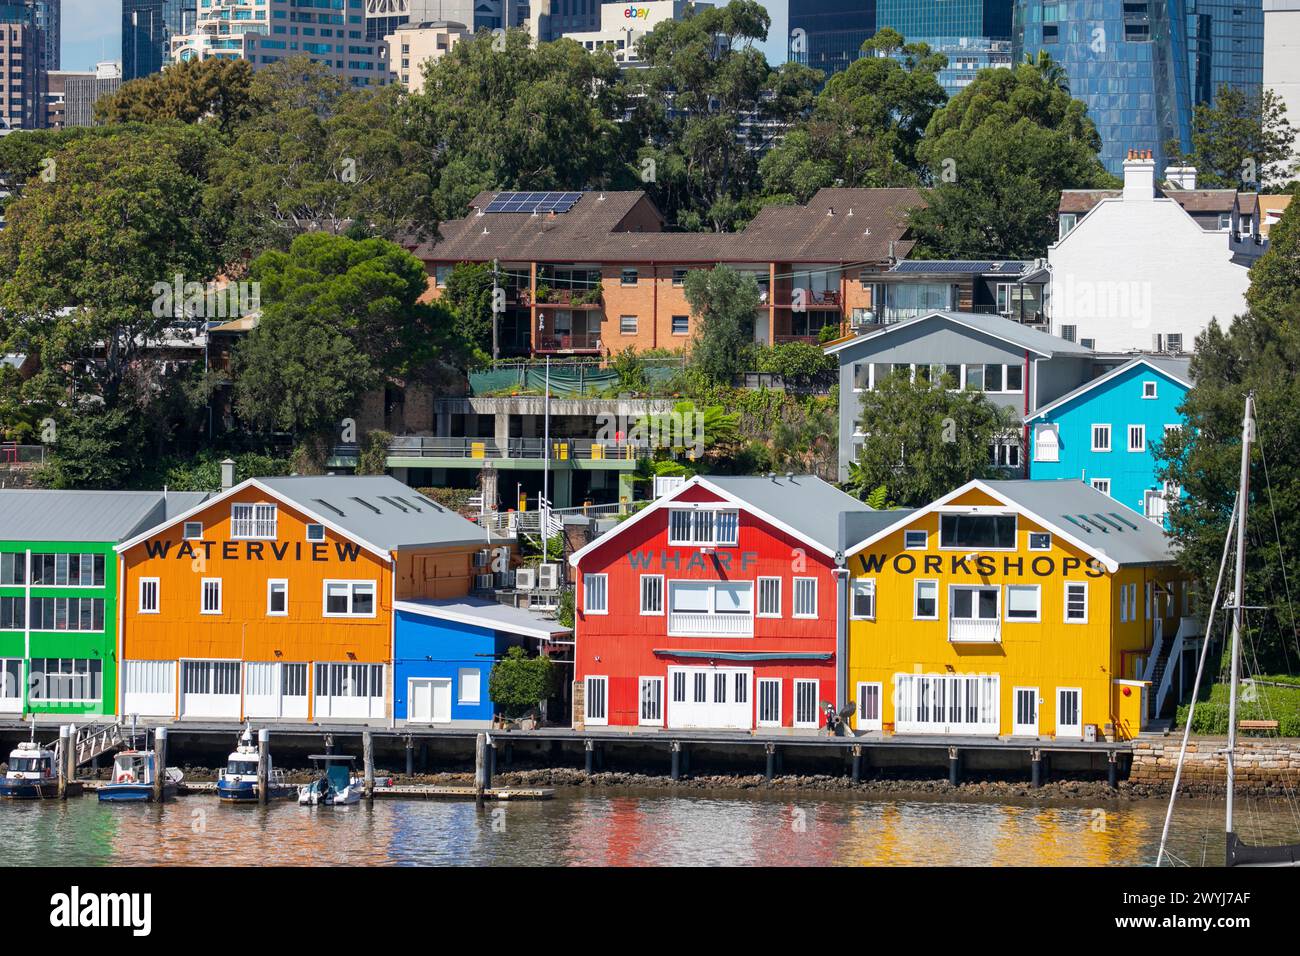 Edifici dai colori vivaci del Waterview Wharf Workshops sul lungomare della Penisola di Balmain, Sydney, nuovo Galles del Sud, Australia Foto Stock